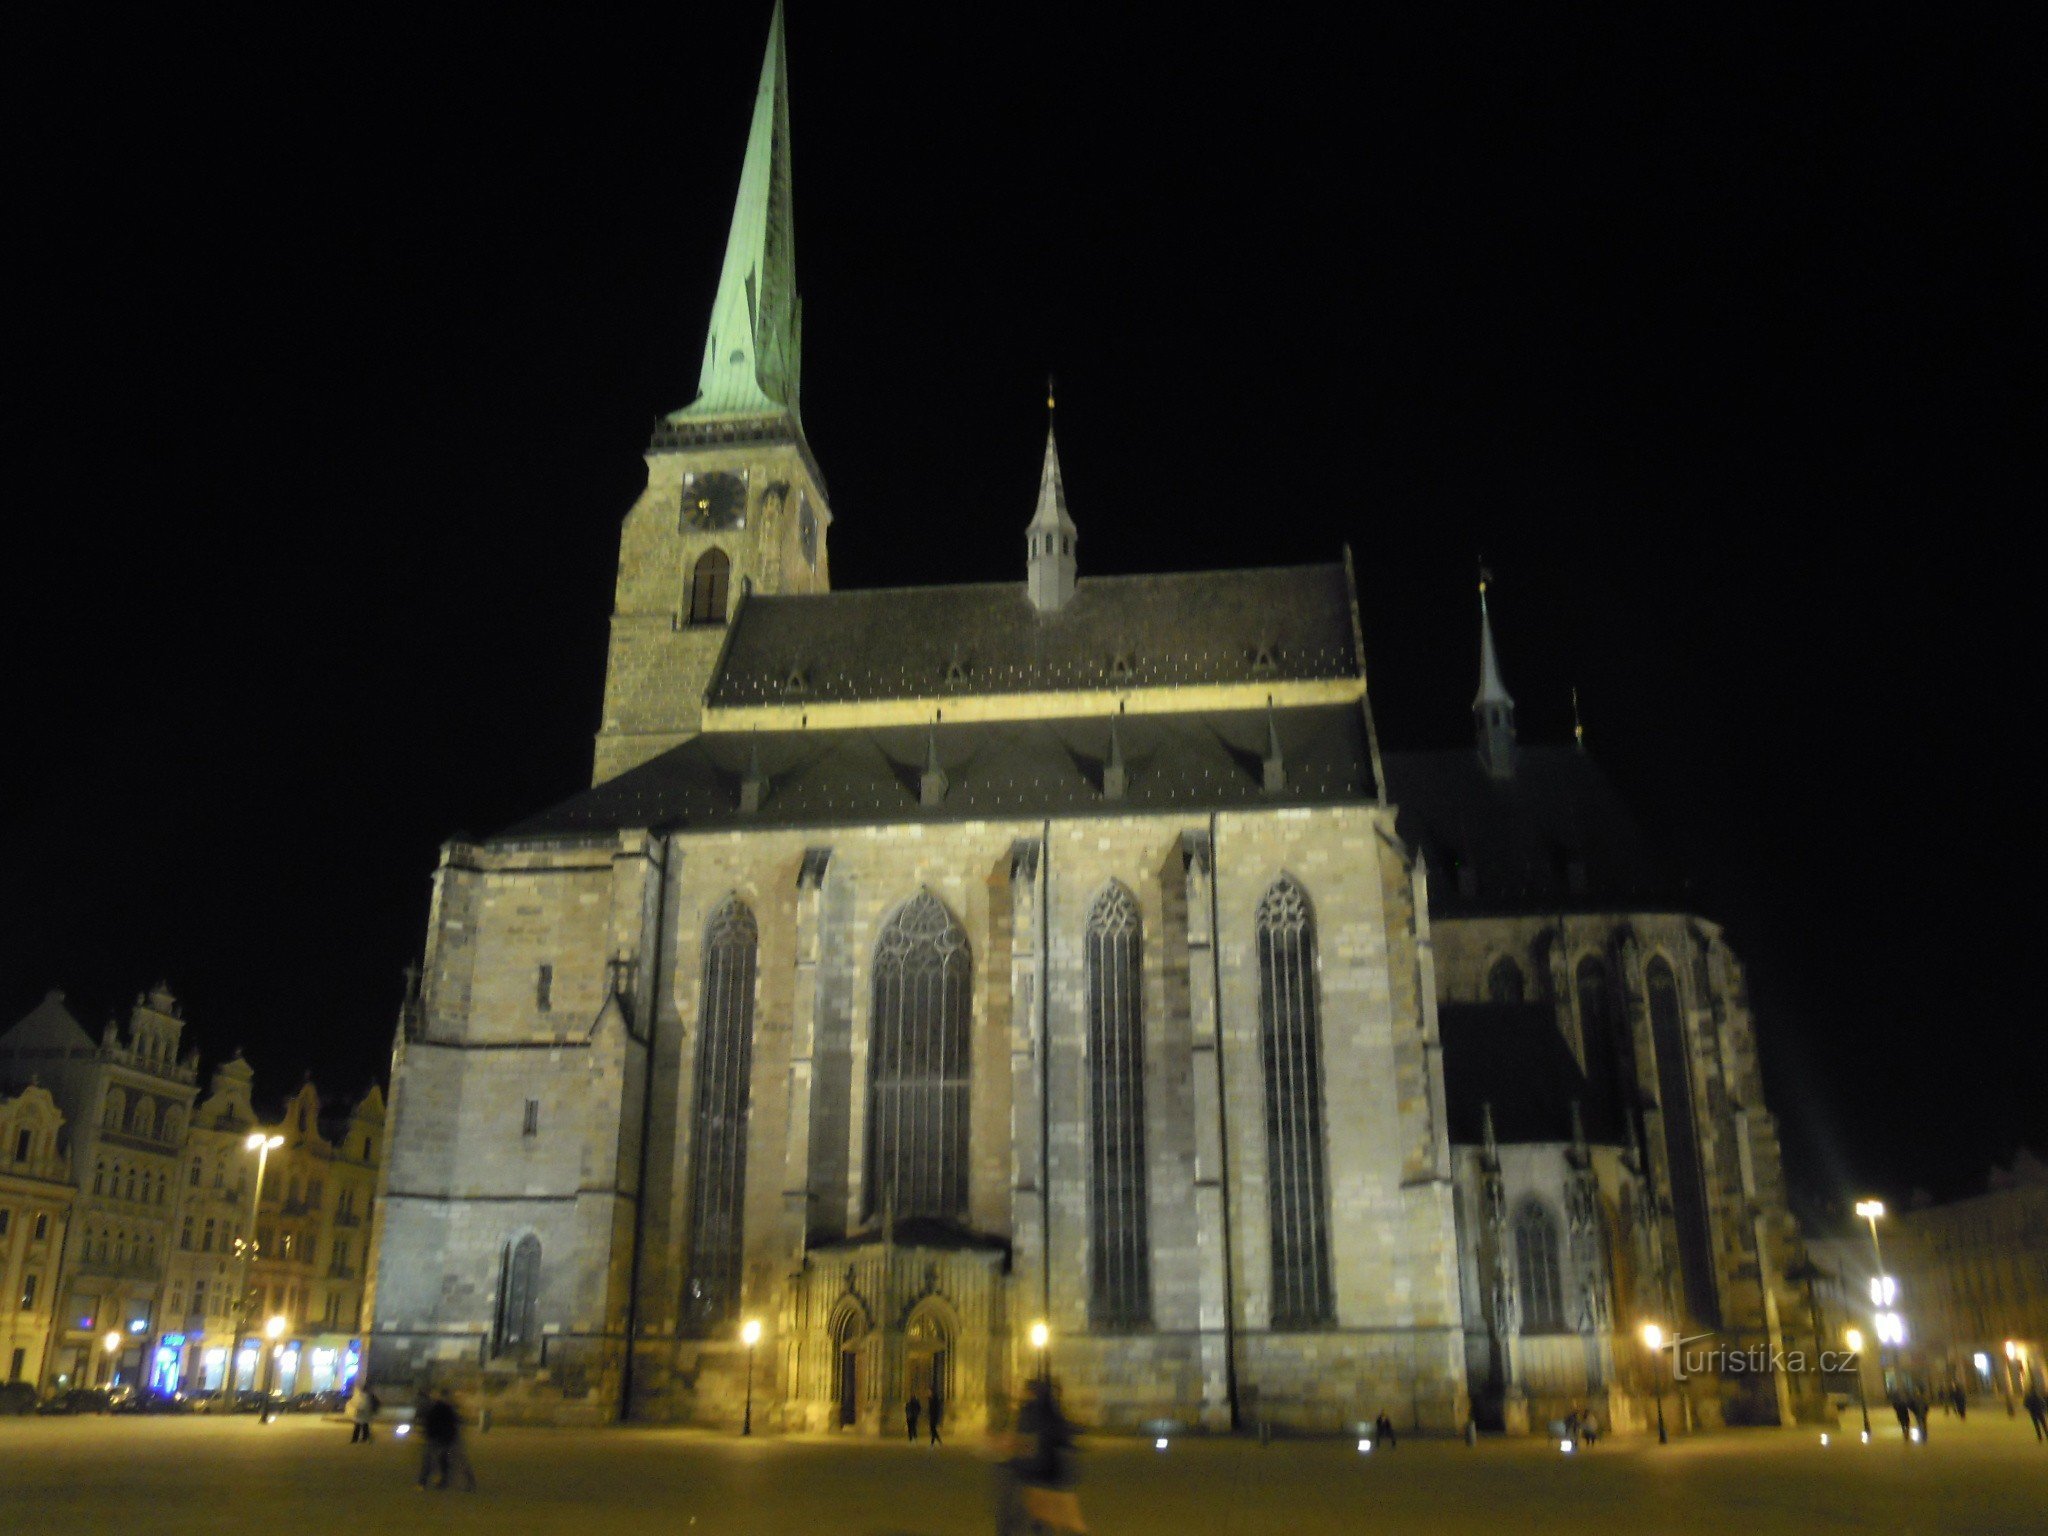 Katedrála sv. Bartoloměje na náměstí Republiky v Plzni večer